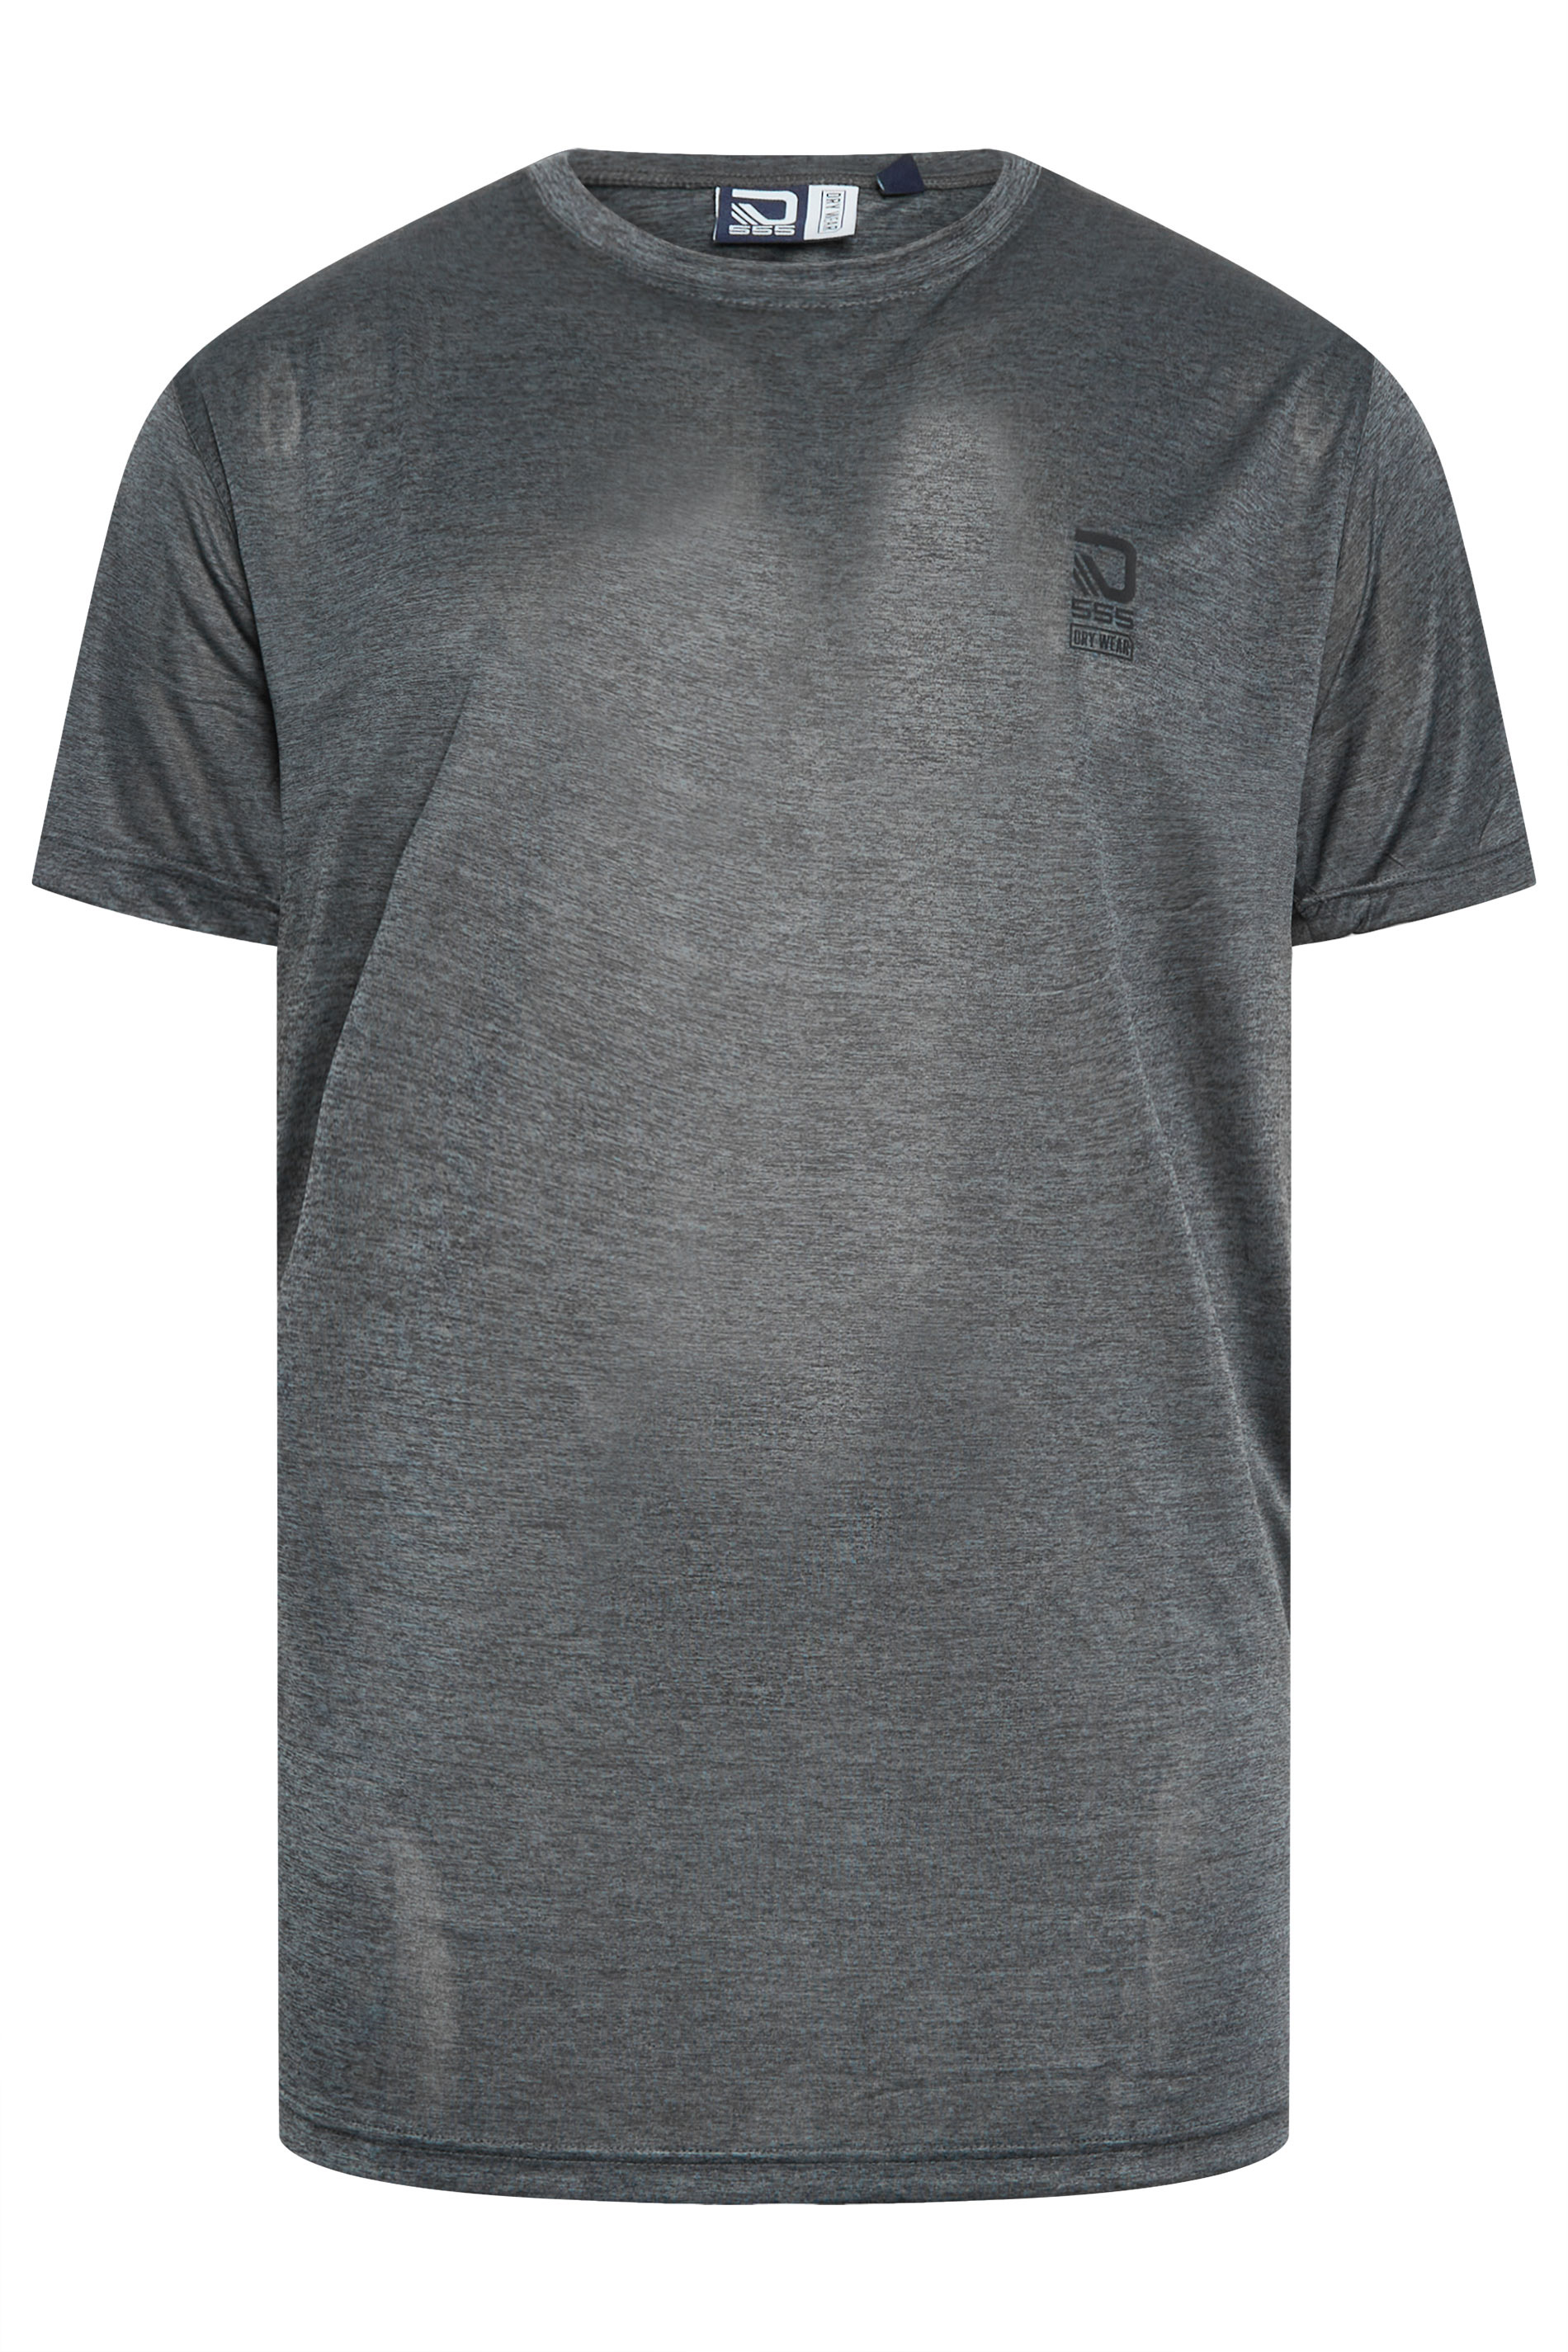 D555 Big & Tall Dark Grey Dry Wear T-Shirt | Bad Rhino 3